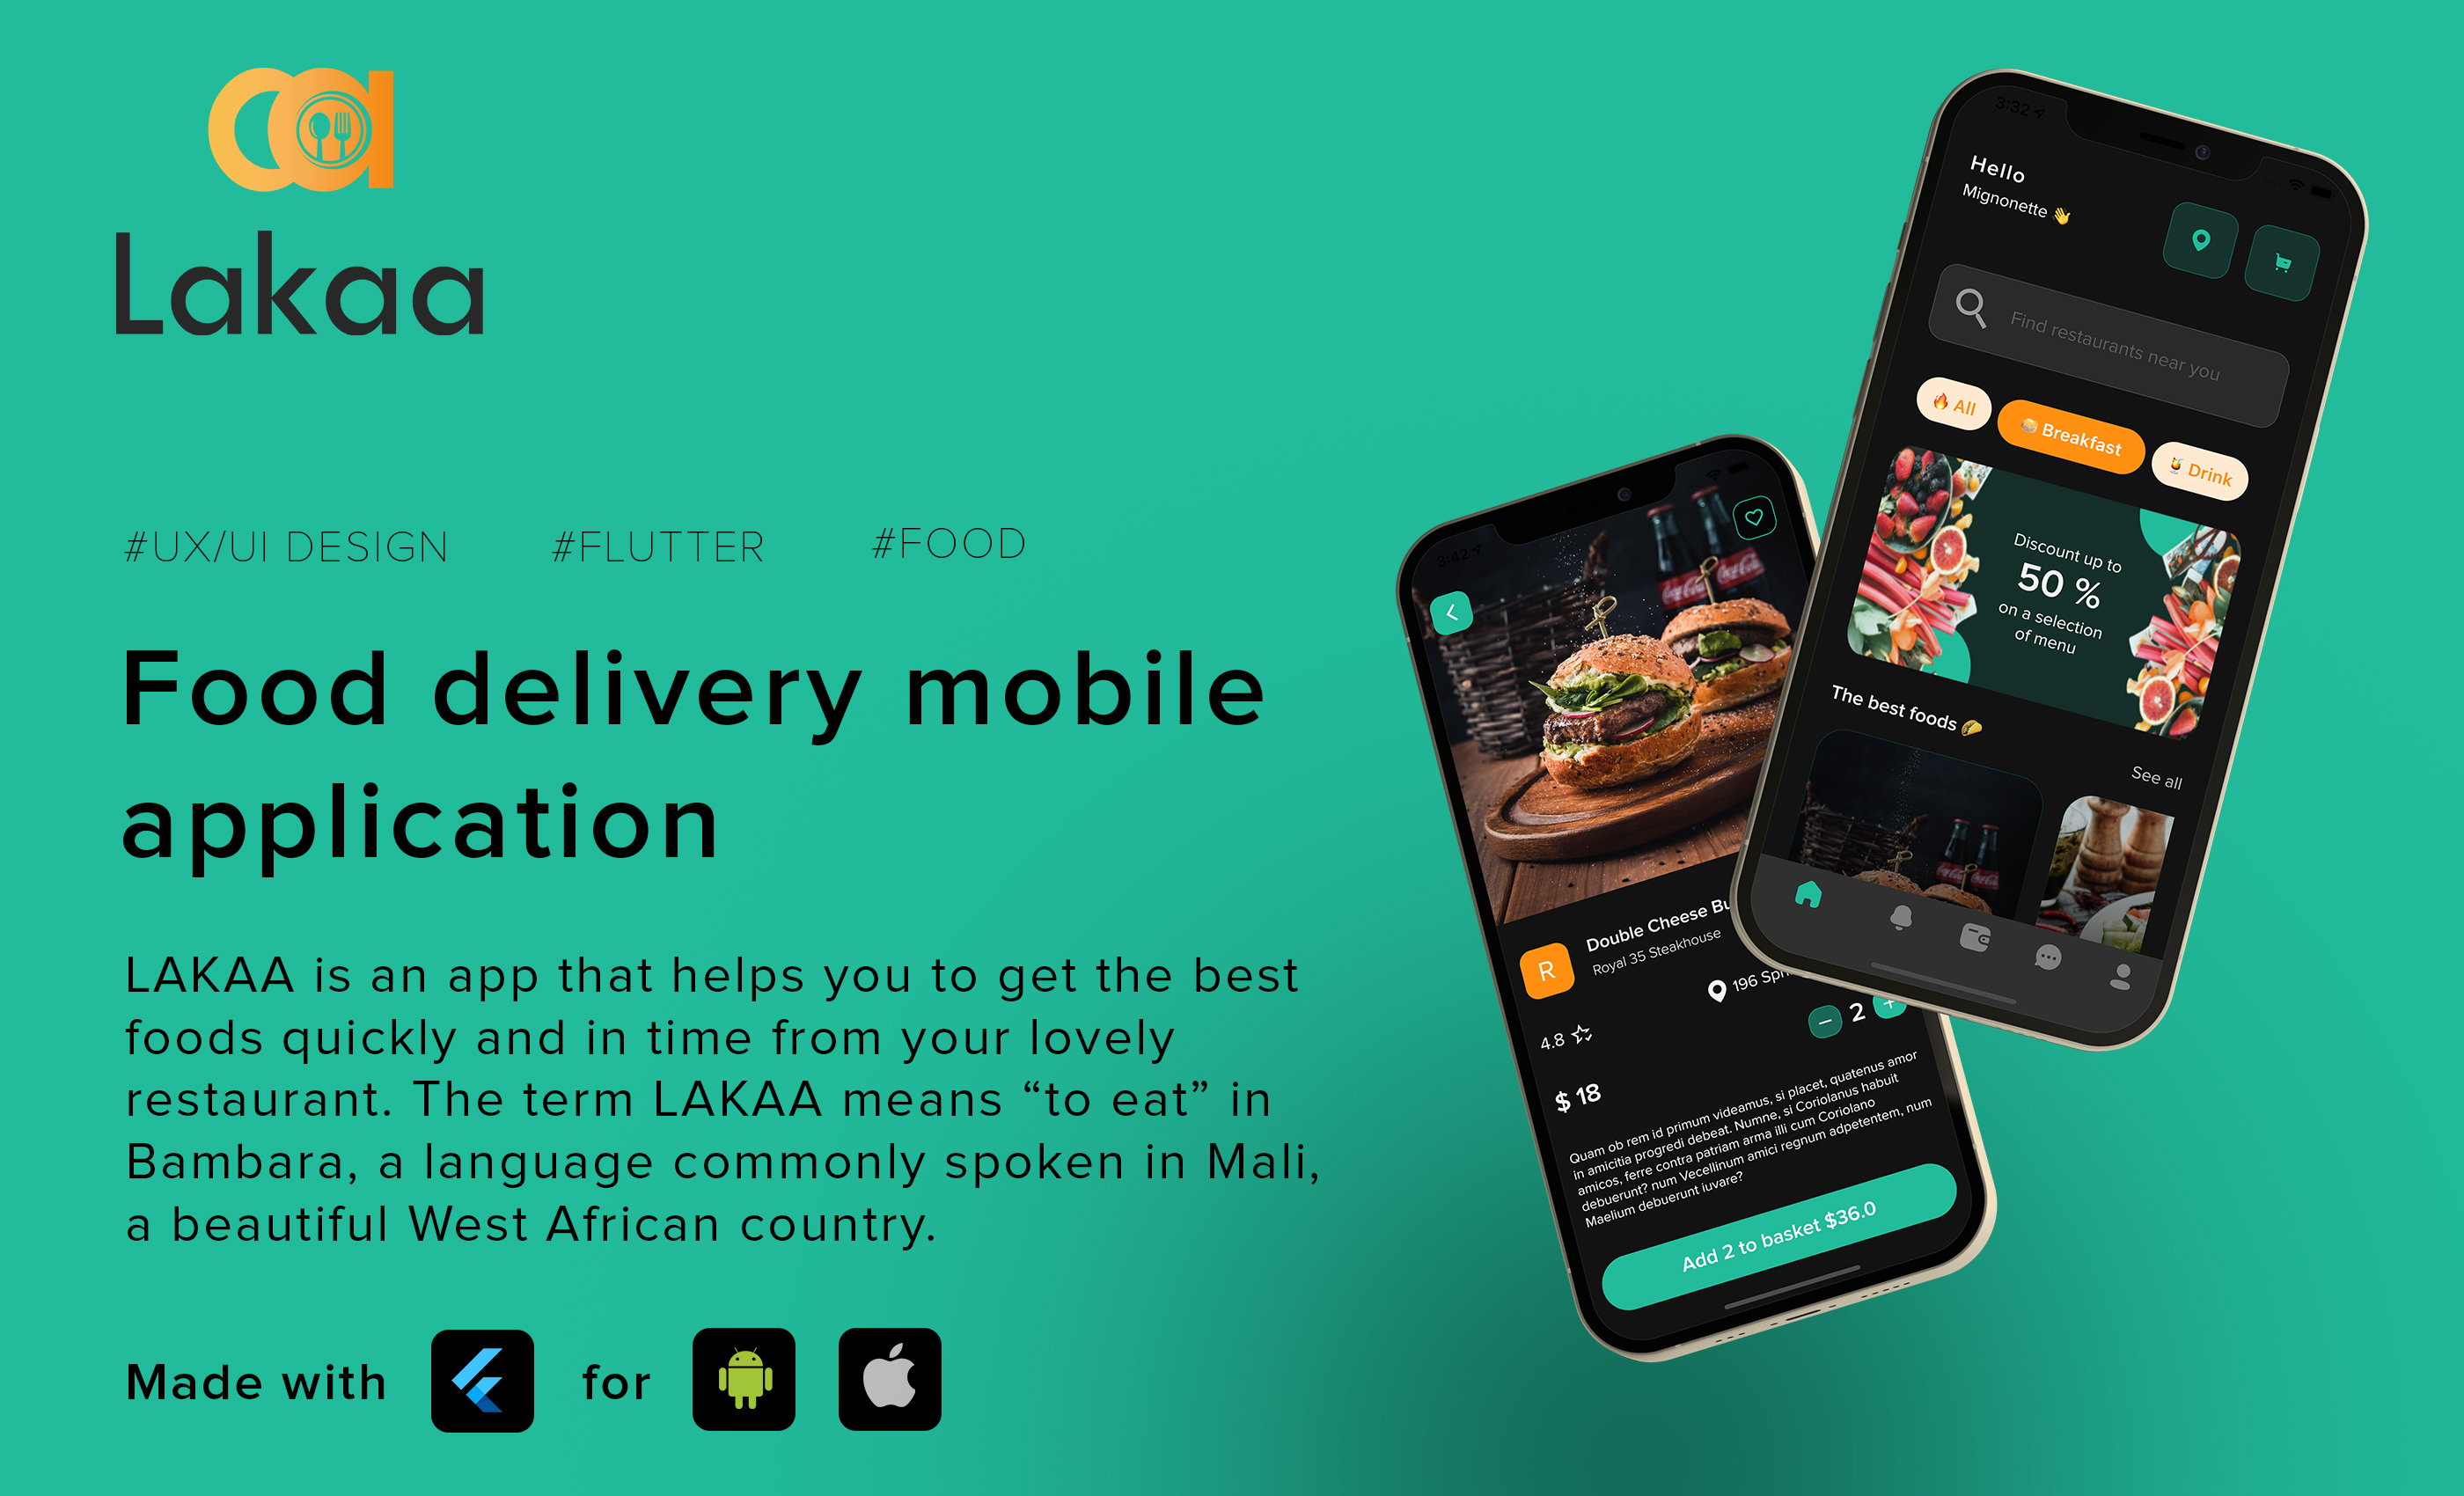 Lakaa food delivery app presentation - flutter ui kit design